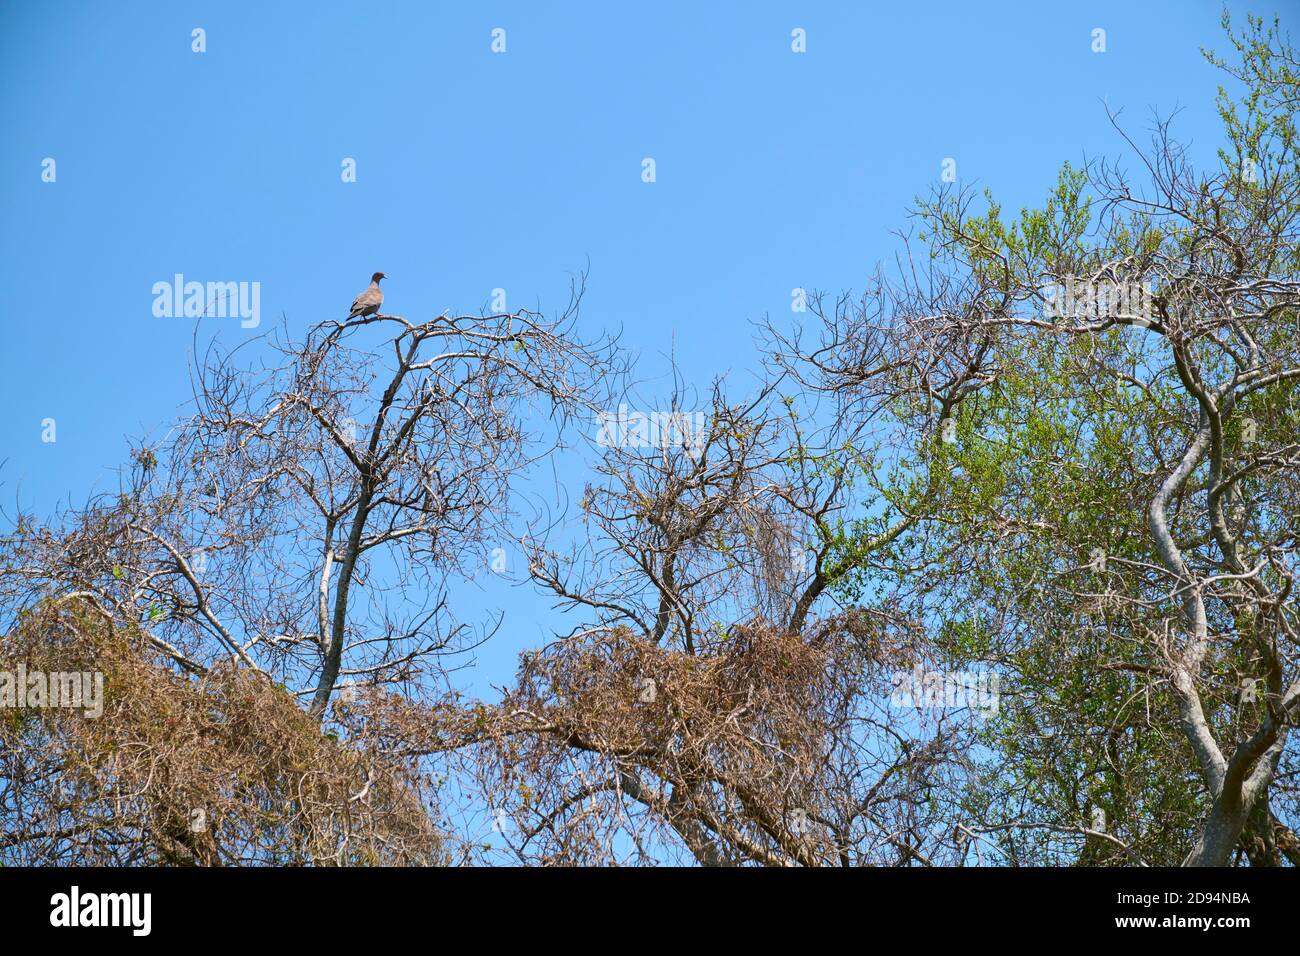 Escena primaveral en la reserva ecológica Costanera Sur, una paloma de punta blanca, Leptotila verreauxi, en la parte superior de un árbol, las hojas verdes comienzan a brotar Foto de stock